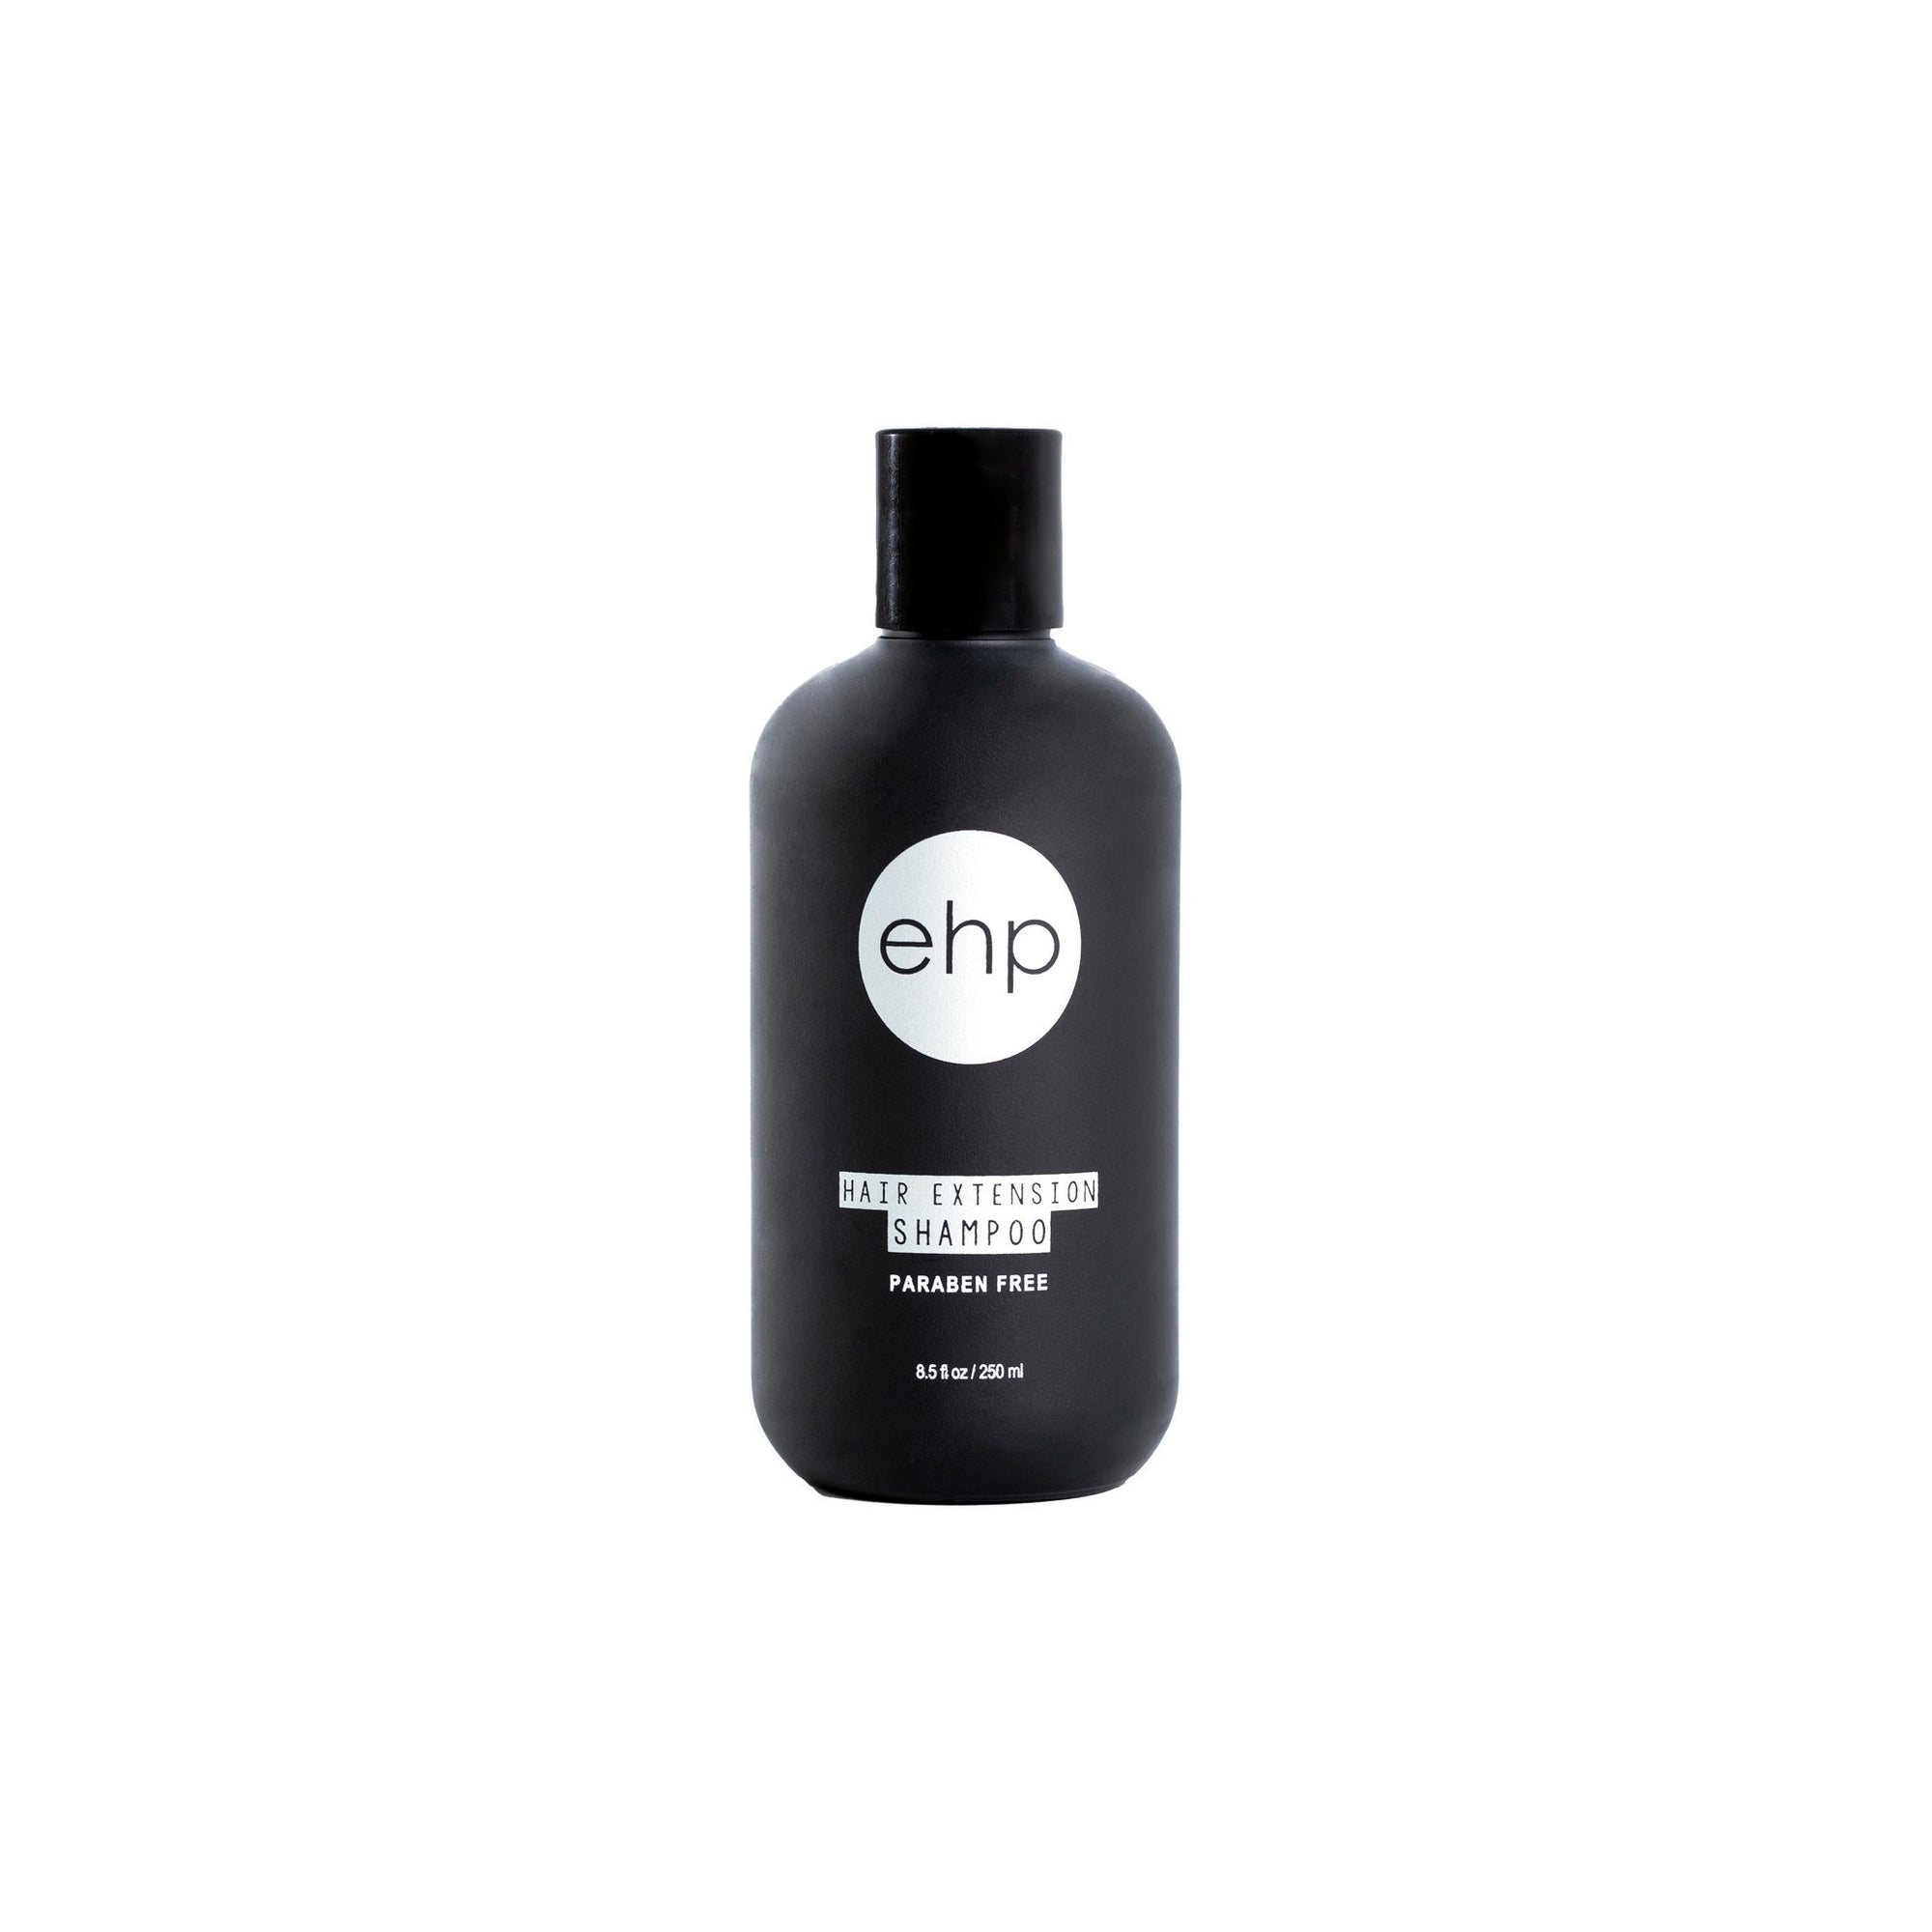 ehp Hair Extension Shampoo 200ml